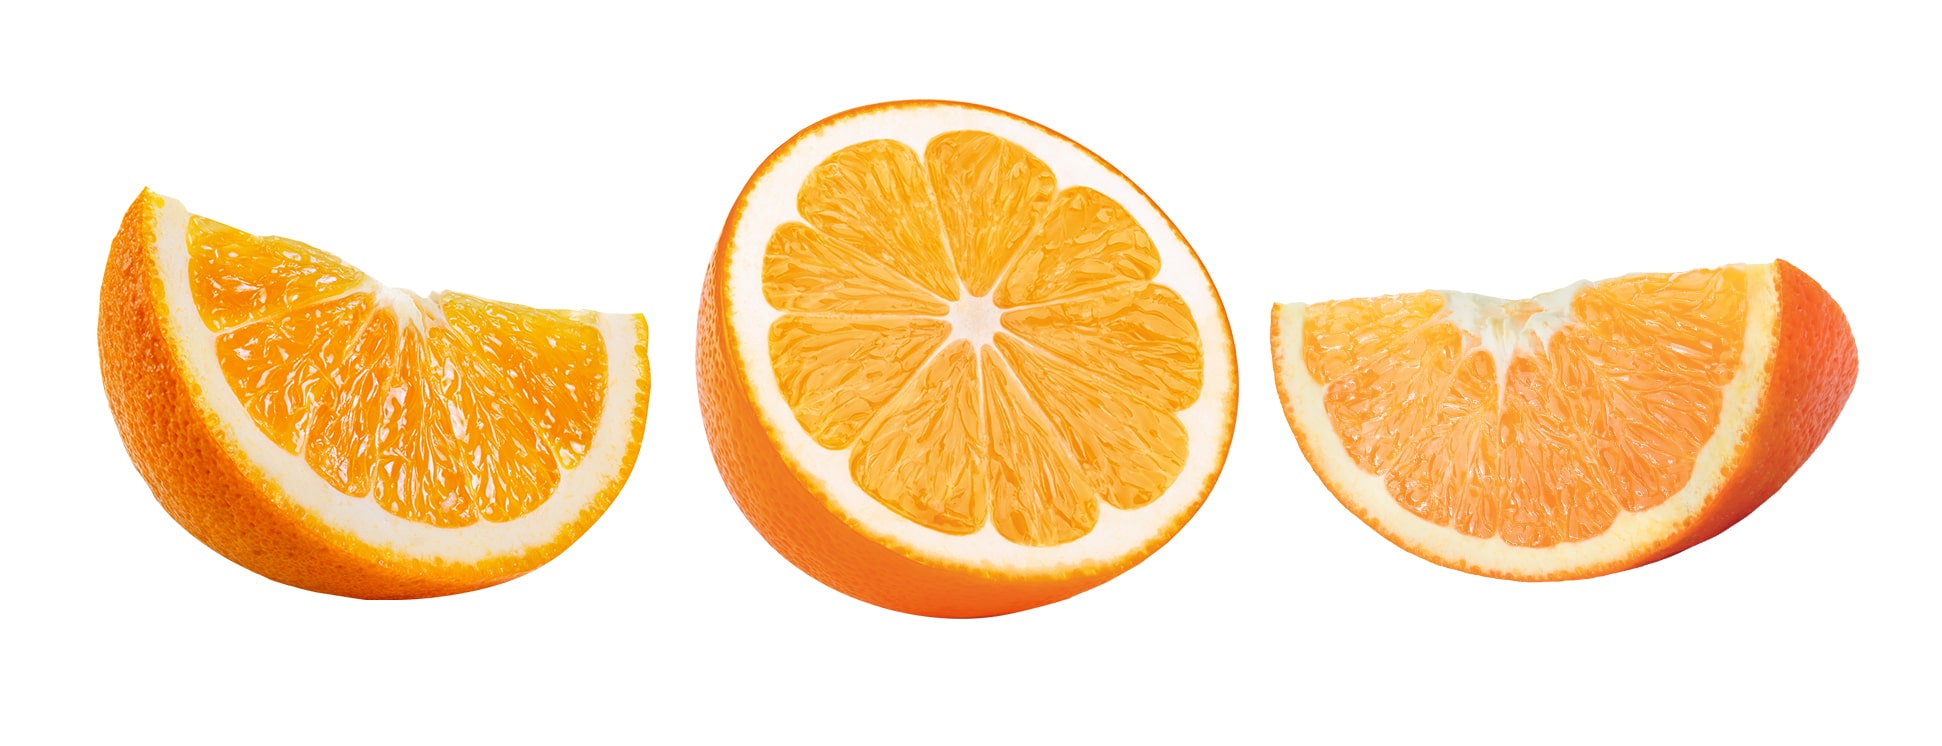 Pomarańcza - właściwości odżywcze i zastosowanie w diecie